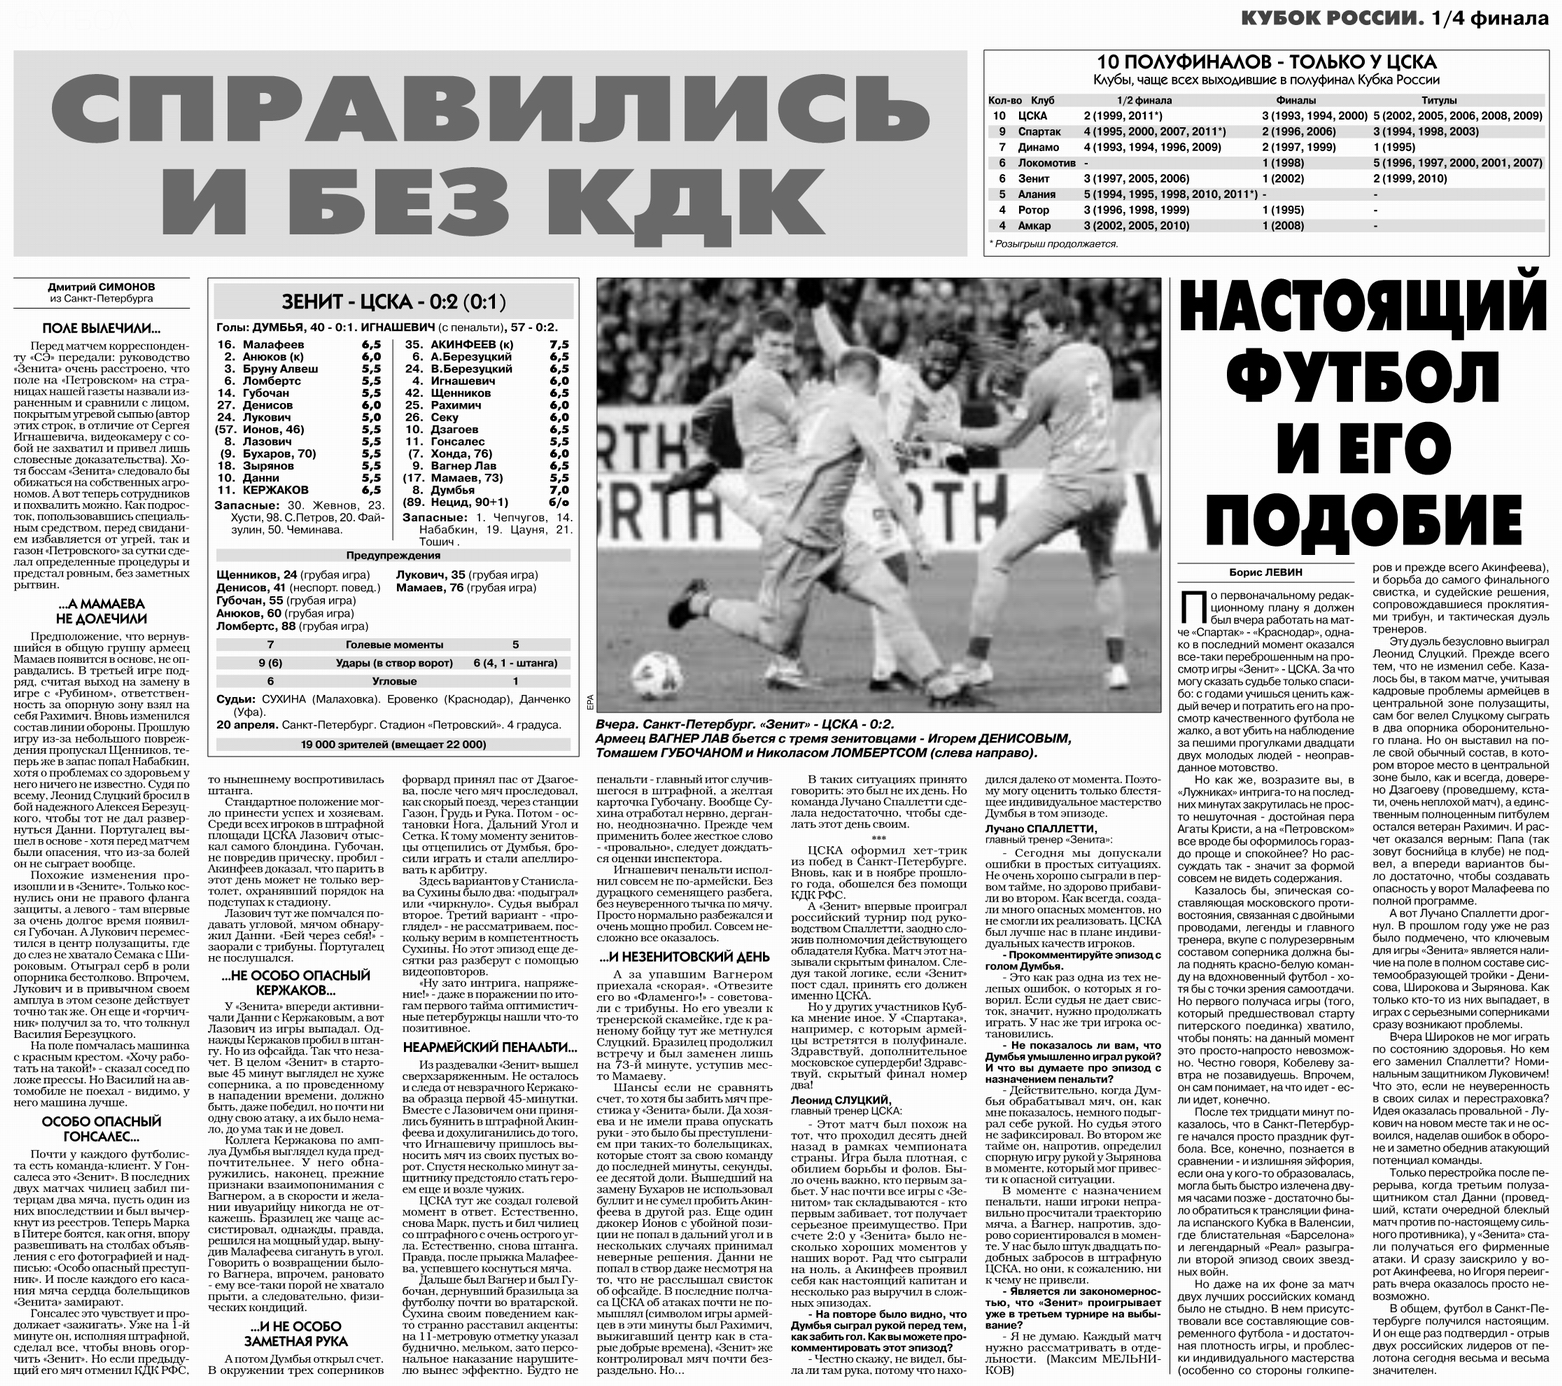 2011-04-20.Zenit-CSKA